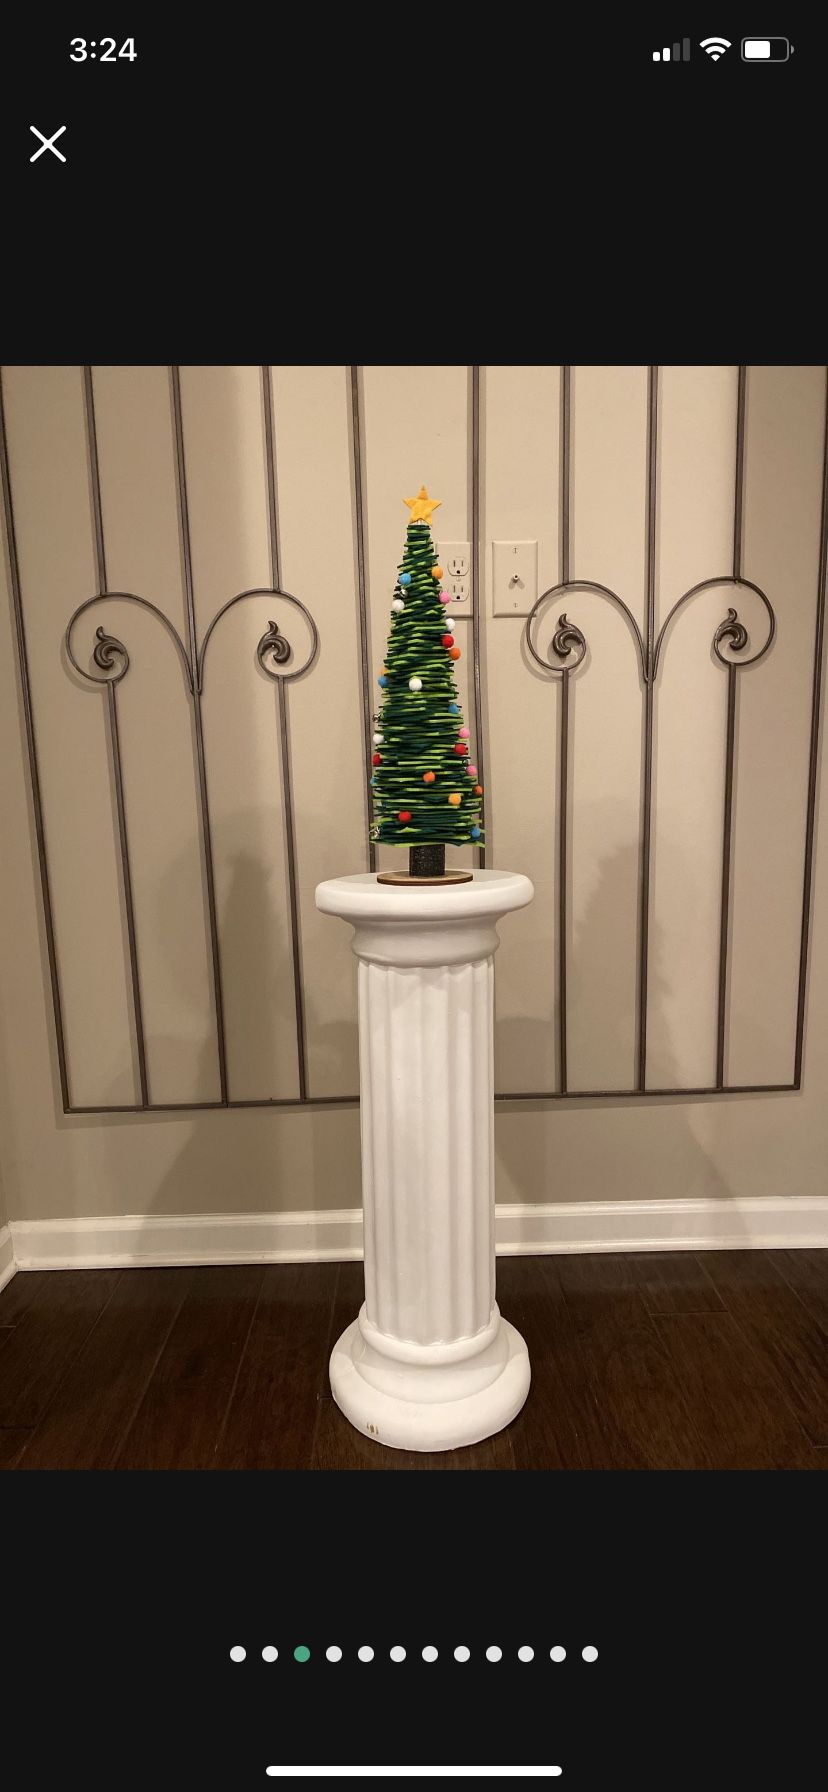 NEW (Tag $14.99) Felt & Wood Christmas Tree 19”T